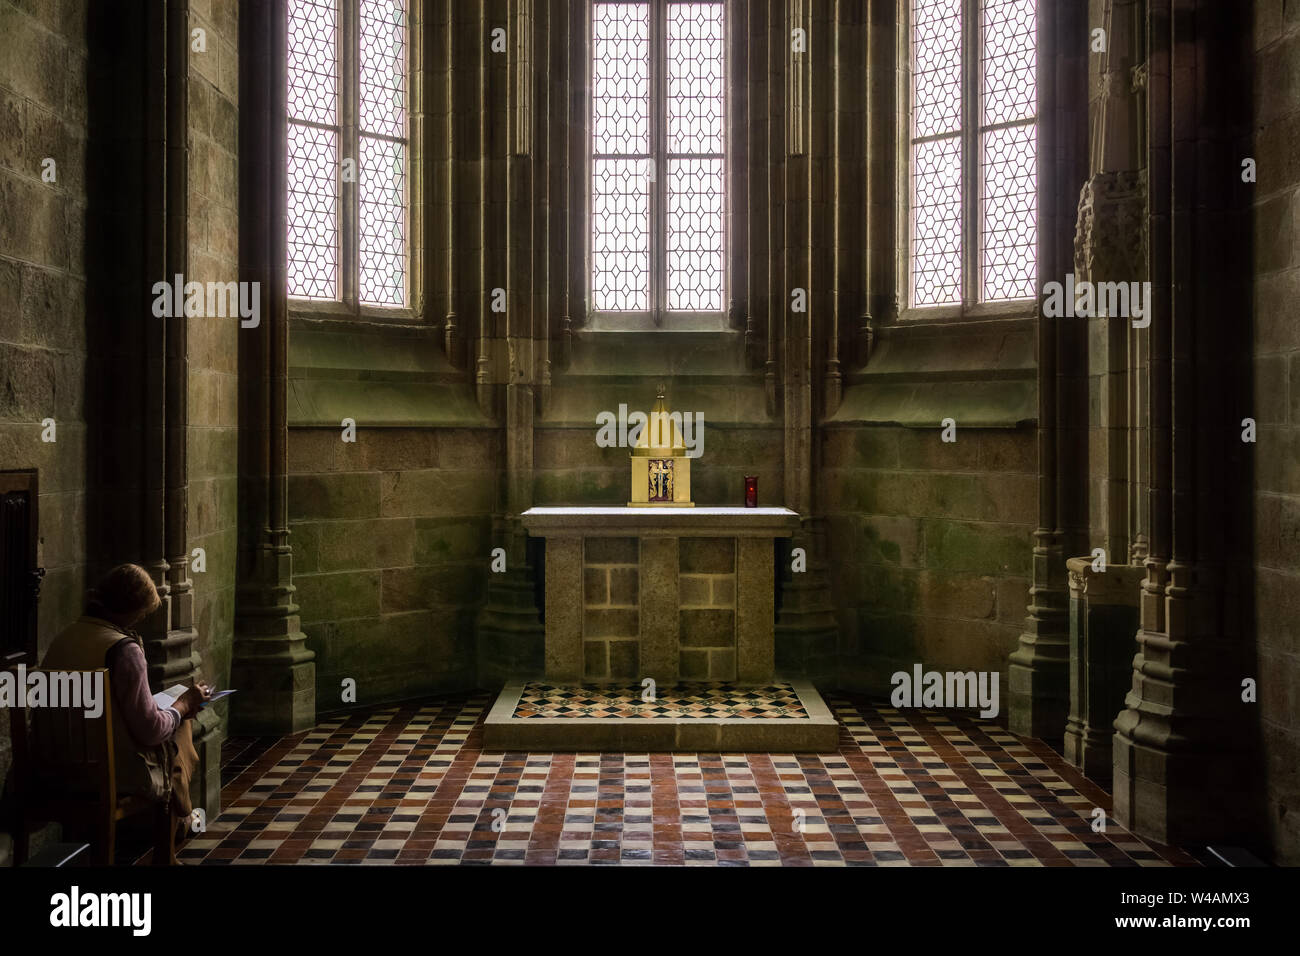 Apsidiole ou chapelle de l'abside dans le choeur gothique de Mt St Michel église abbatiale, Normandie, France. Banque D'Images